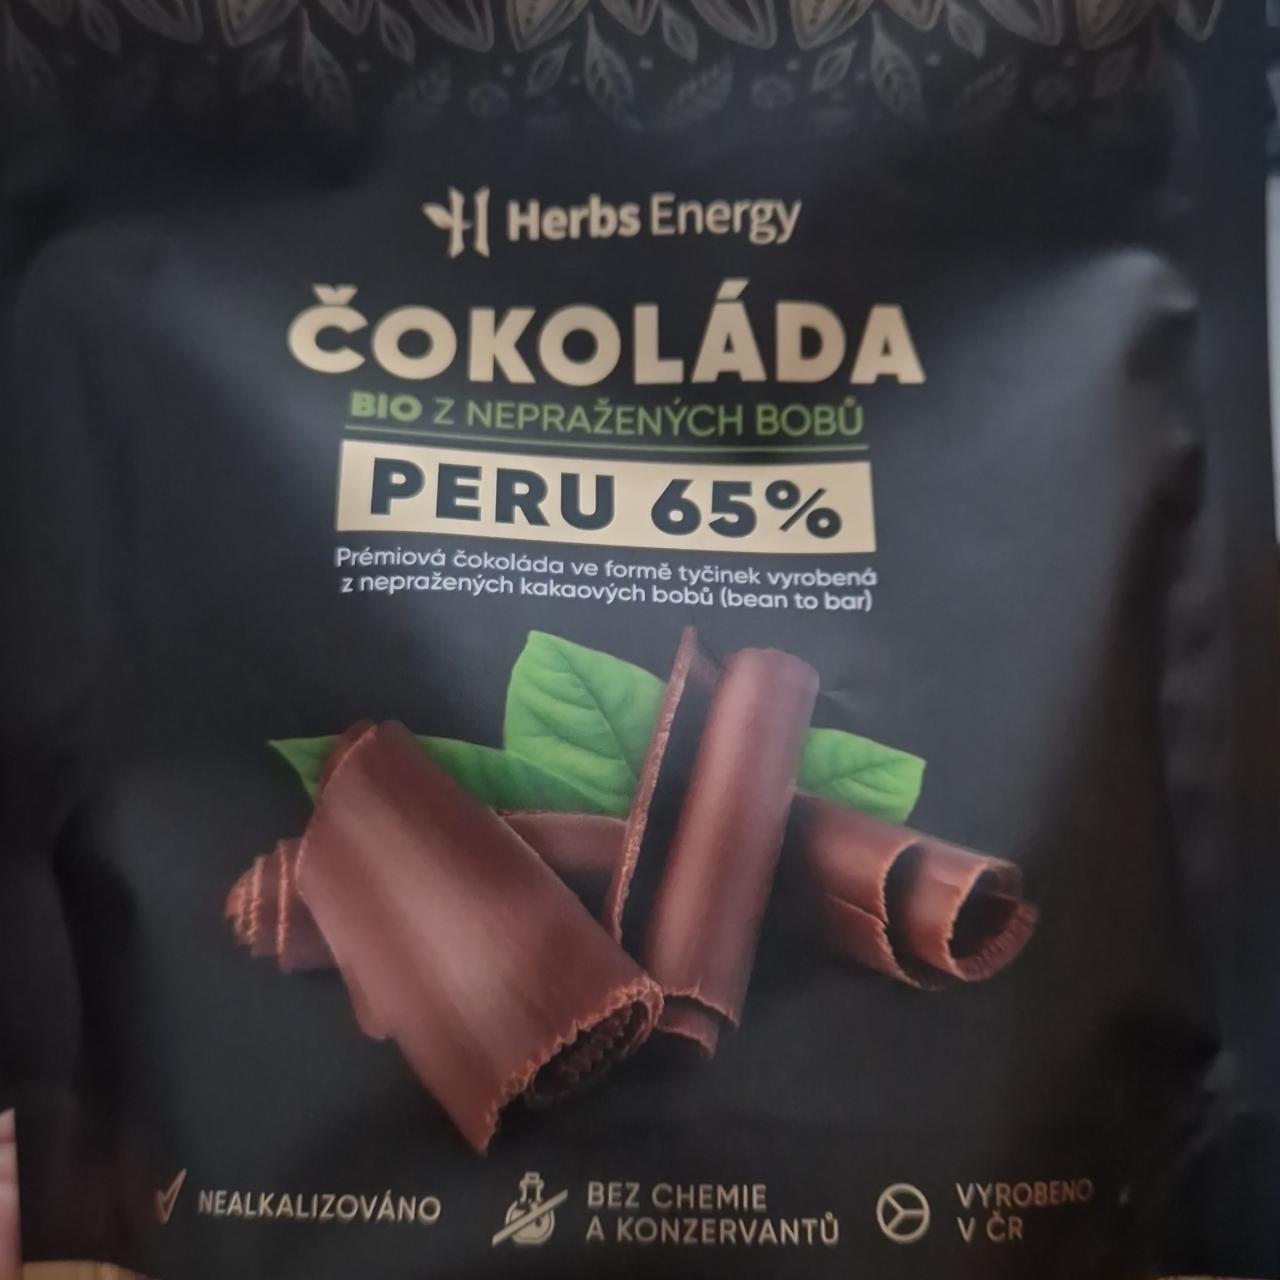 Fotografie - Čokoláda Bio z nepražených bobů Peru 65% Herbs Energy